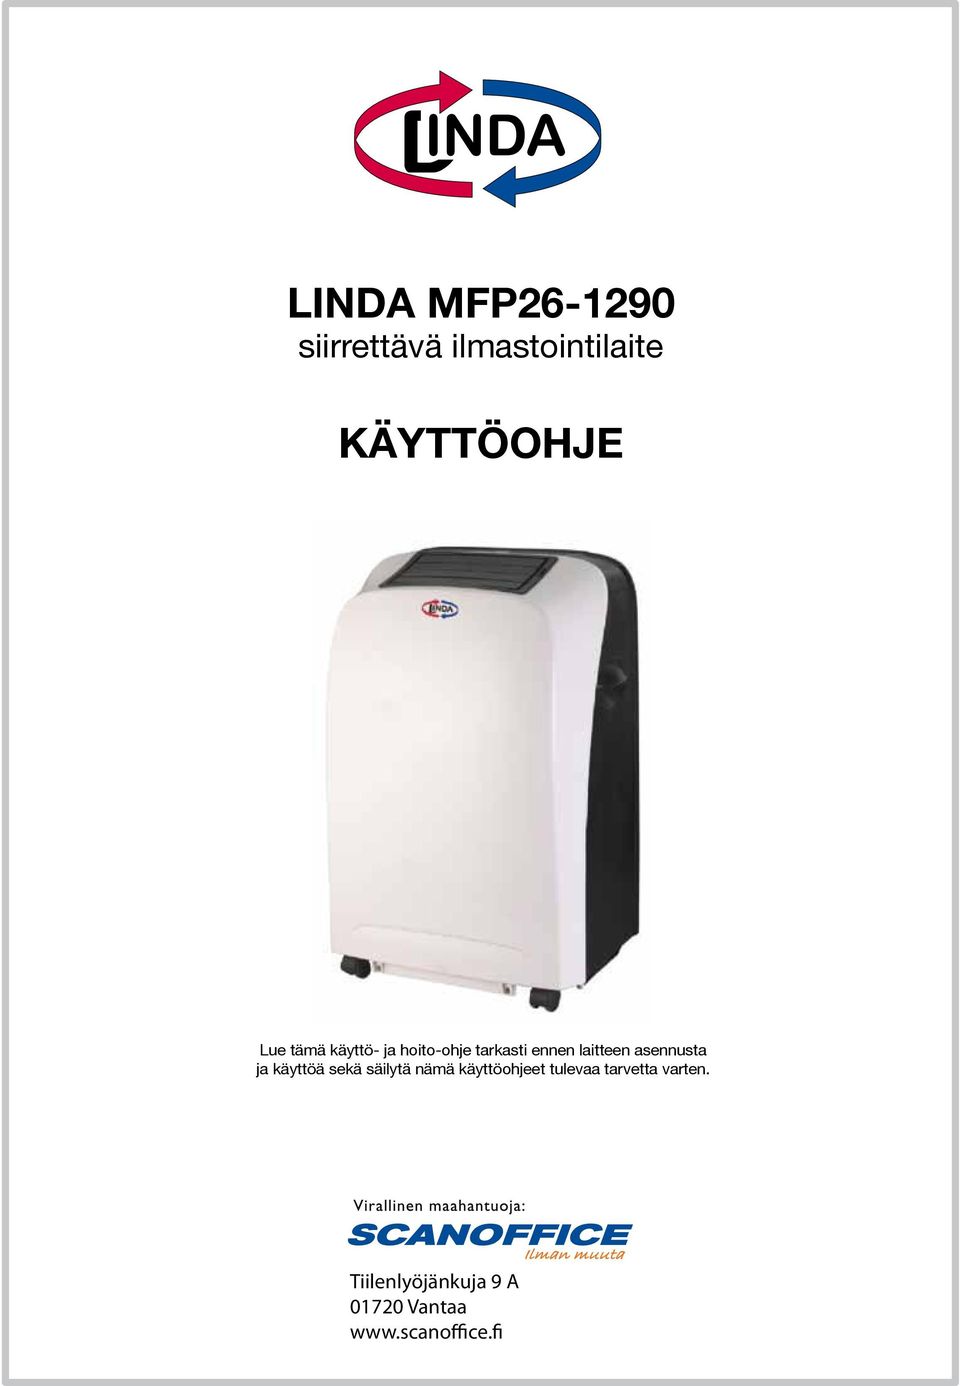 LINDA MFP siirrettävä ilmastointilaite KÄYTTÖOHJE - PDF Free Download